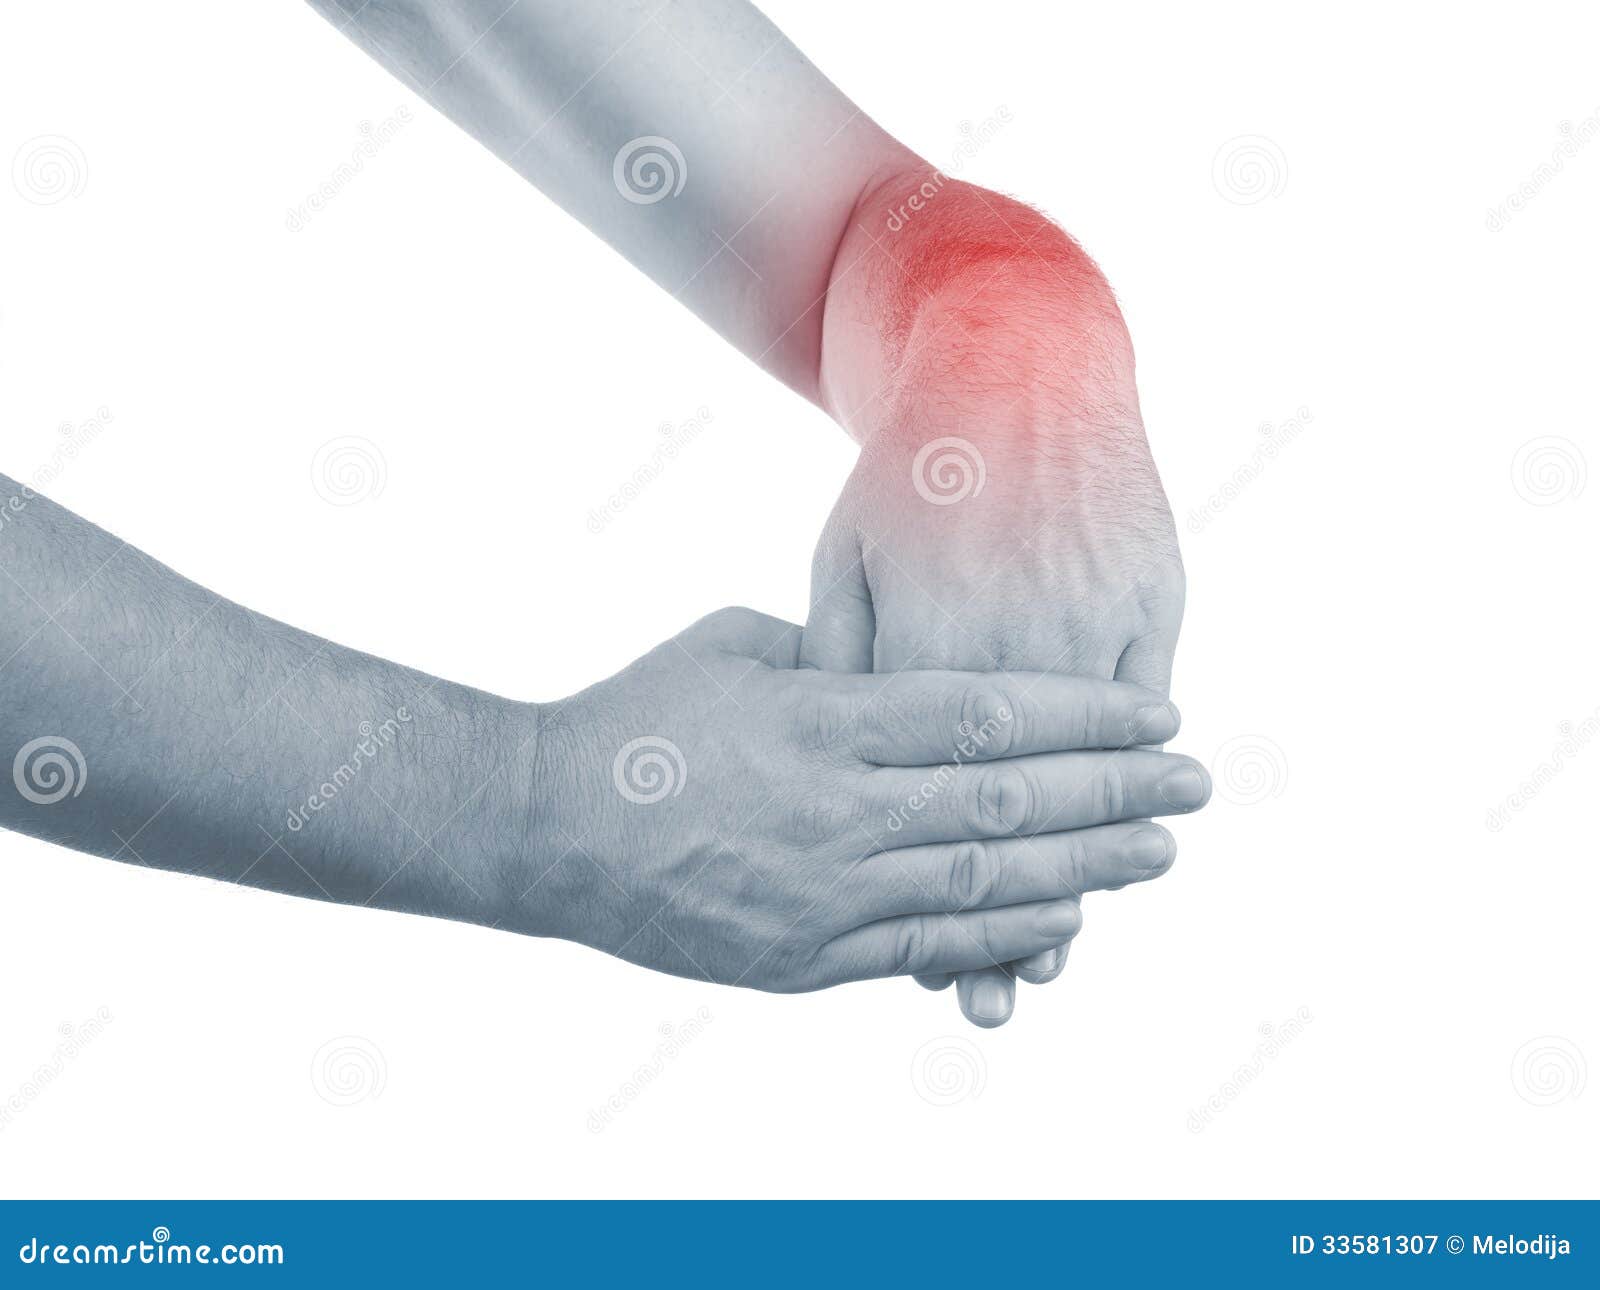 Ноющая боль в левой кисти. Болит рука в лучезапястном суставе. Боль в руке. Болит наружная сторона запястья. Болит запястье левой руки сверху.